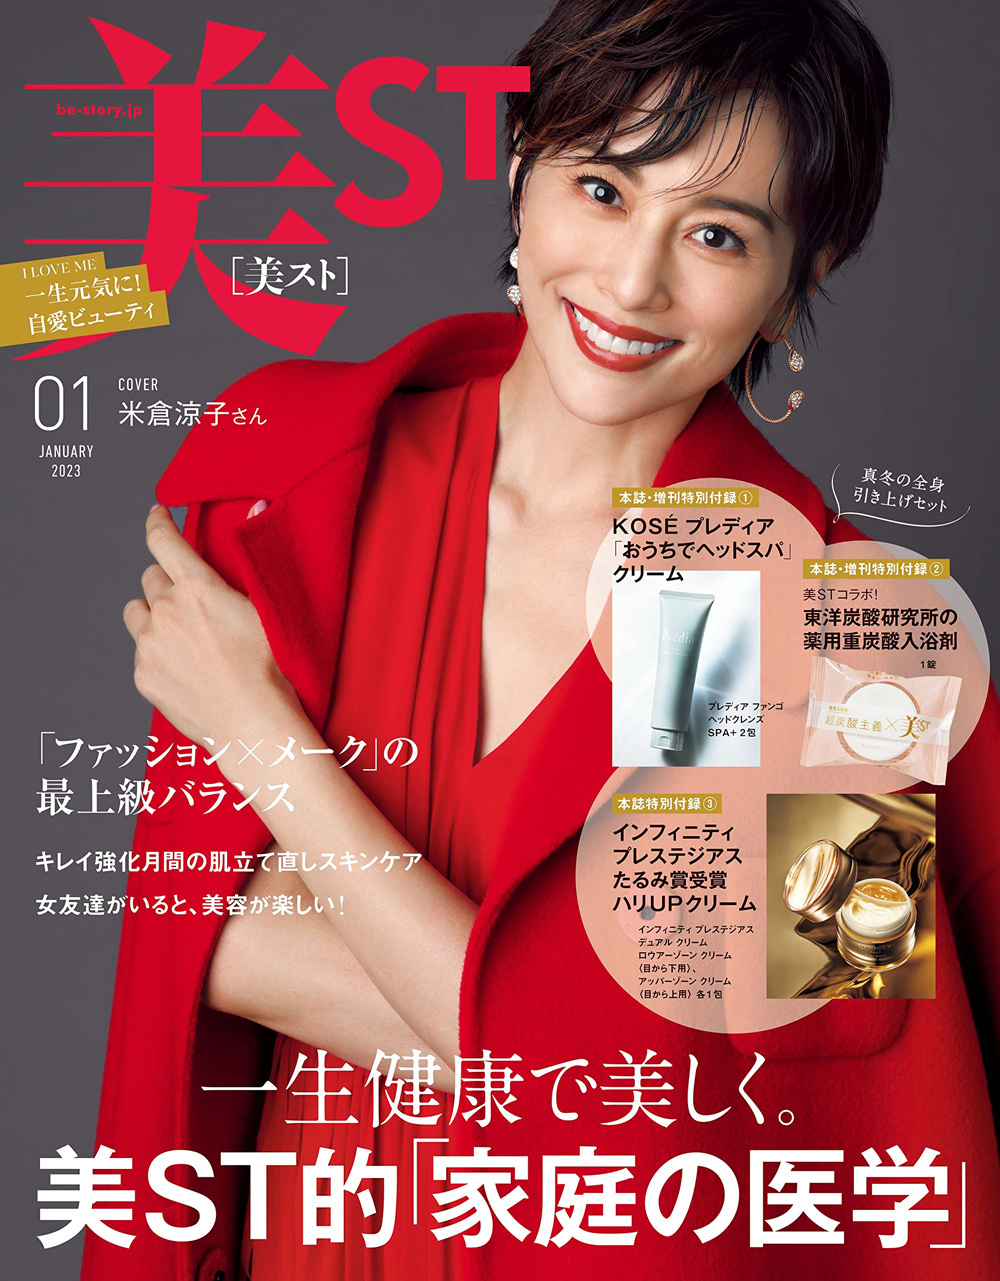 2022年11月17日発売の雑誌「美ST」